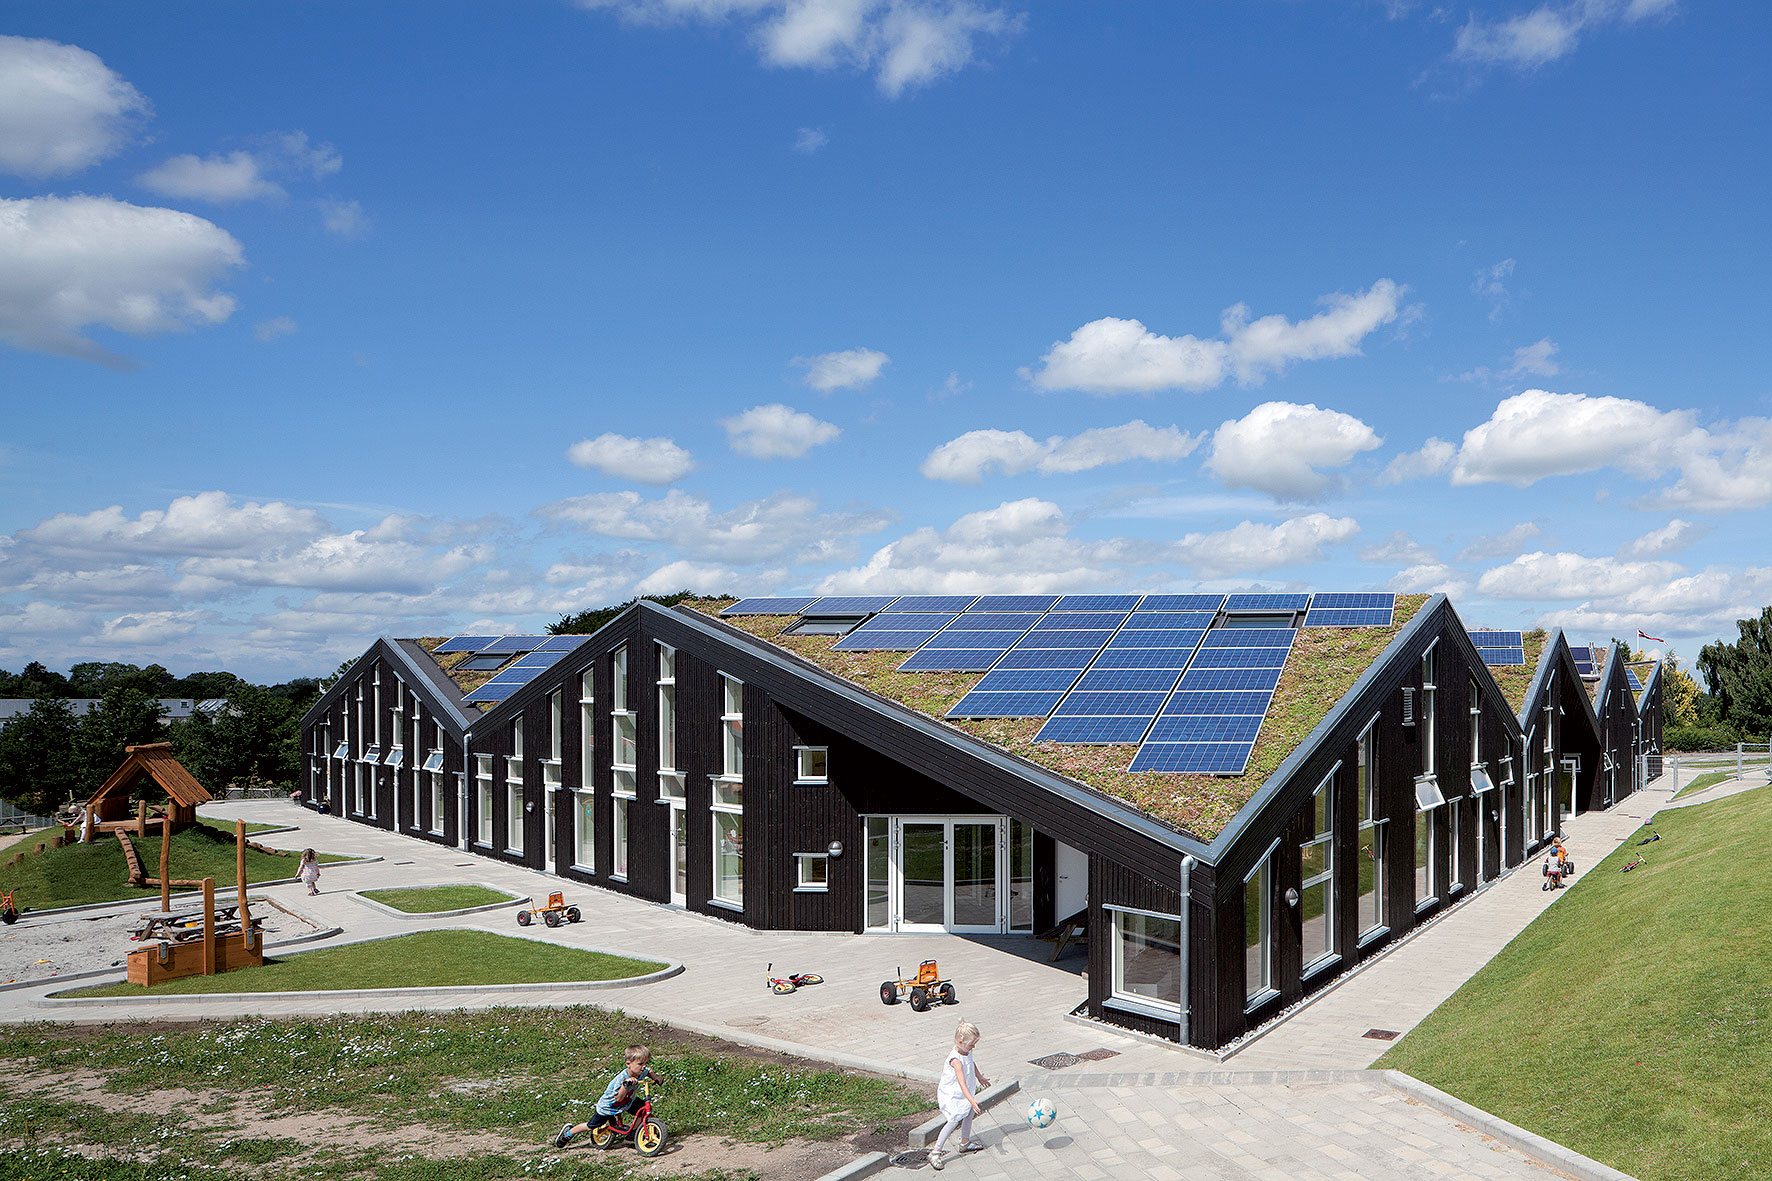 Školka má zdravé vnitřní prostředí s čerstvým vzduchem a 3,5krát více denního světla, než požaduje současná stavební norma v Dánsku.